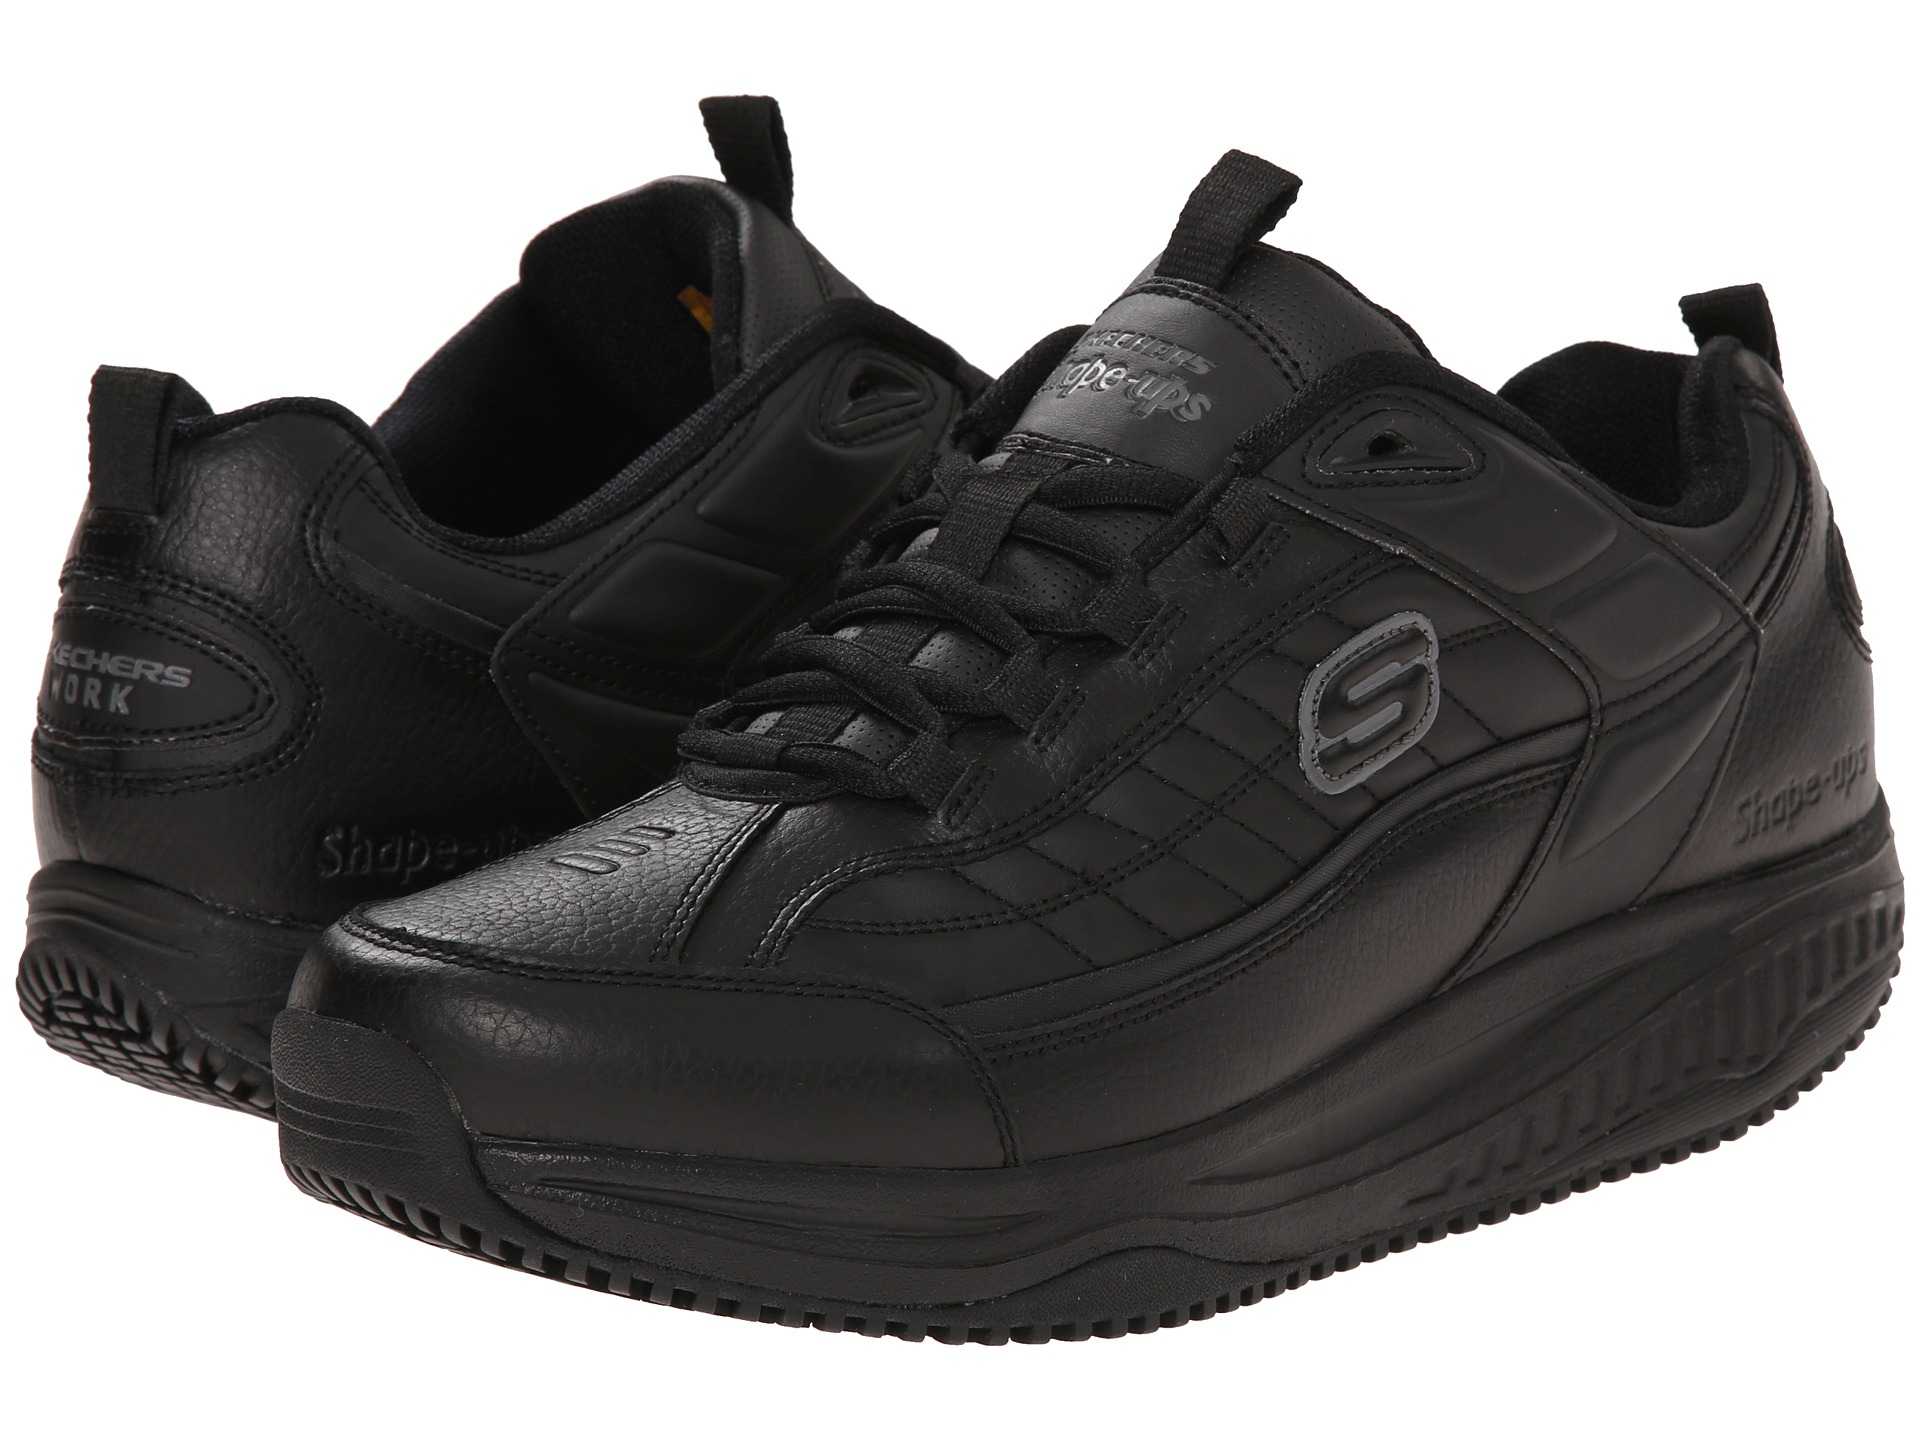 Shoe Carnival Skechers Shape Ups Factory Sale, SAVE 47% -  raptorunderlayment.com